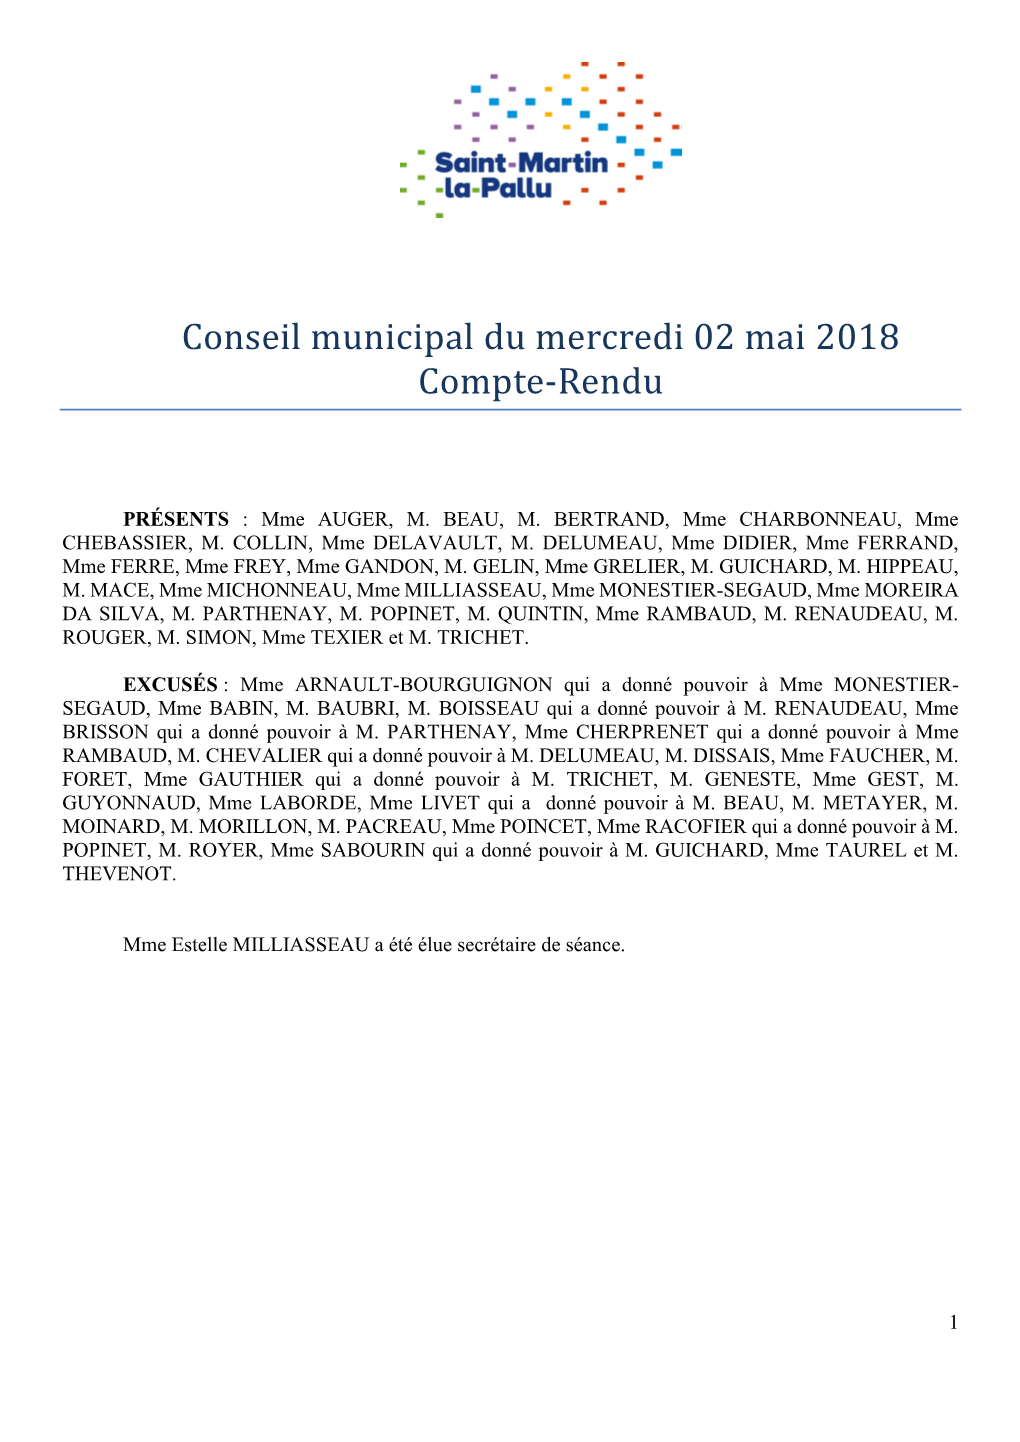 Conseil Municipal Du Mercredi 02 Mai 2018 Compte-Rendu